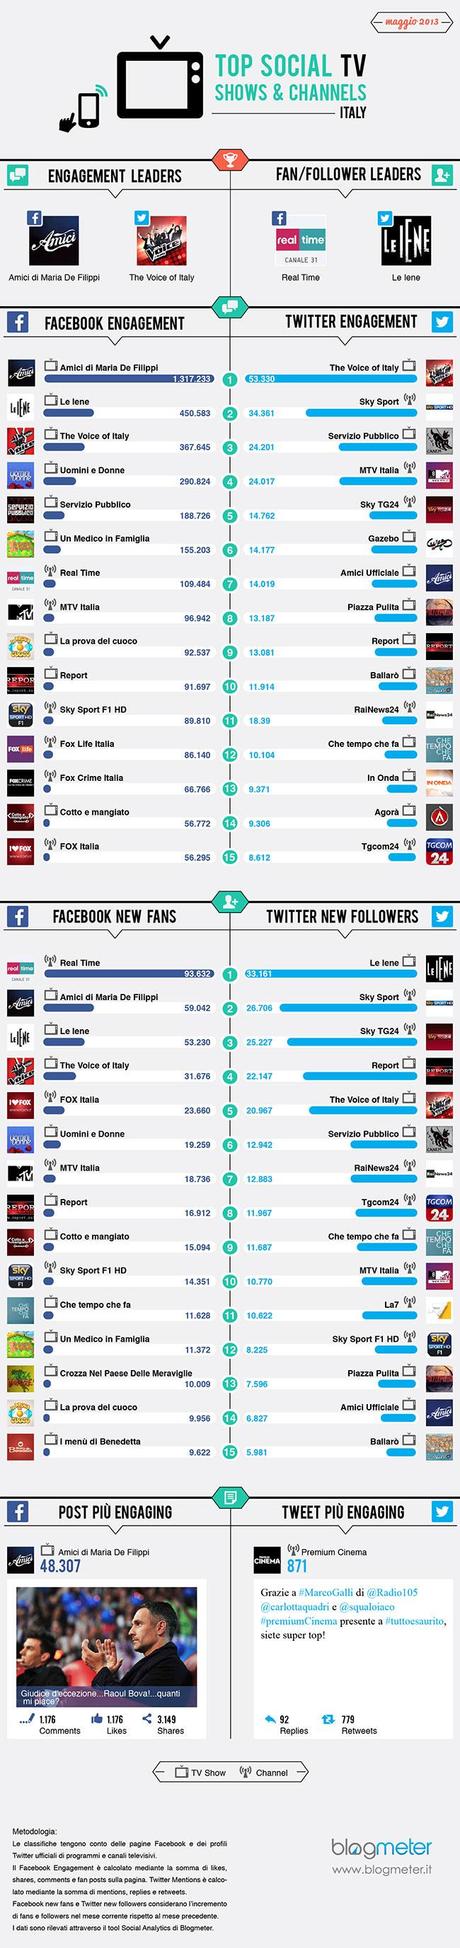 Social Tv, i Talent a maggio rubano la scena a tutti [Infografica]